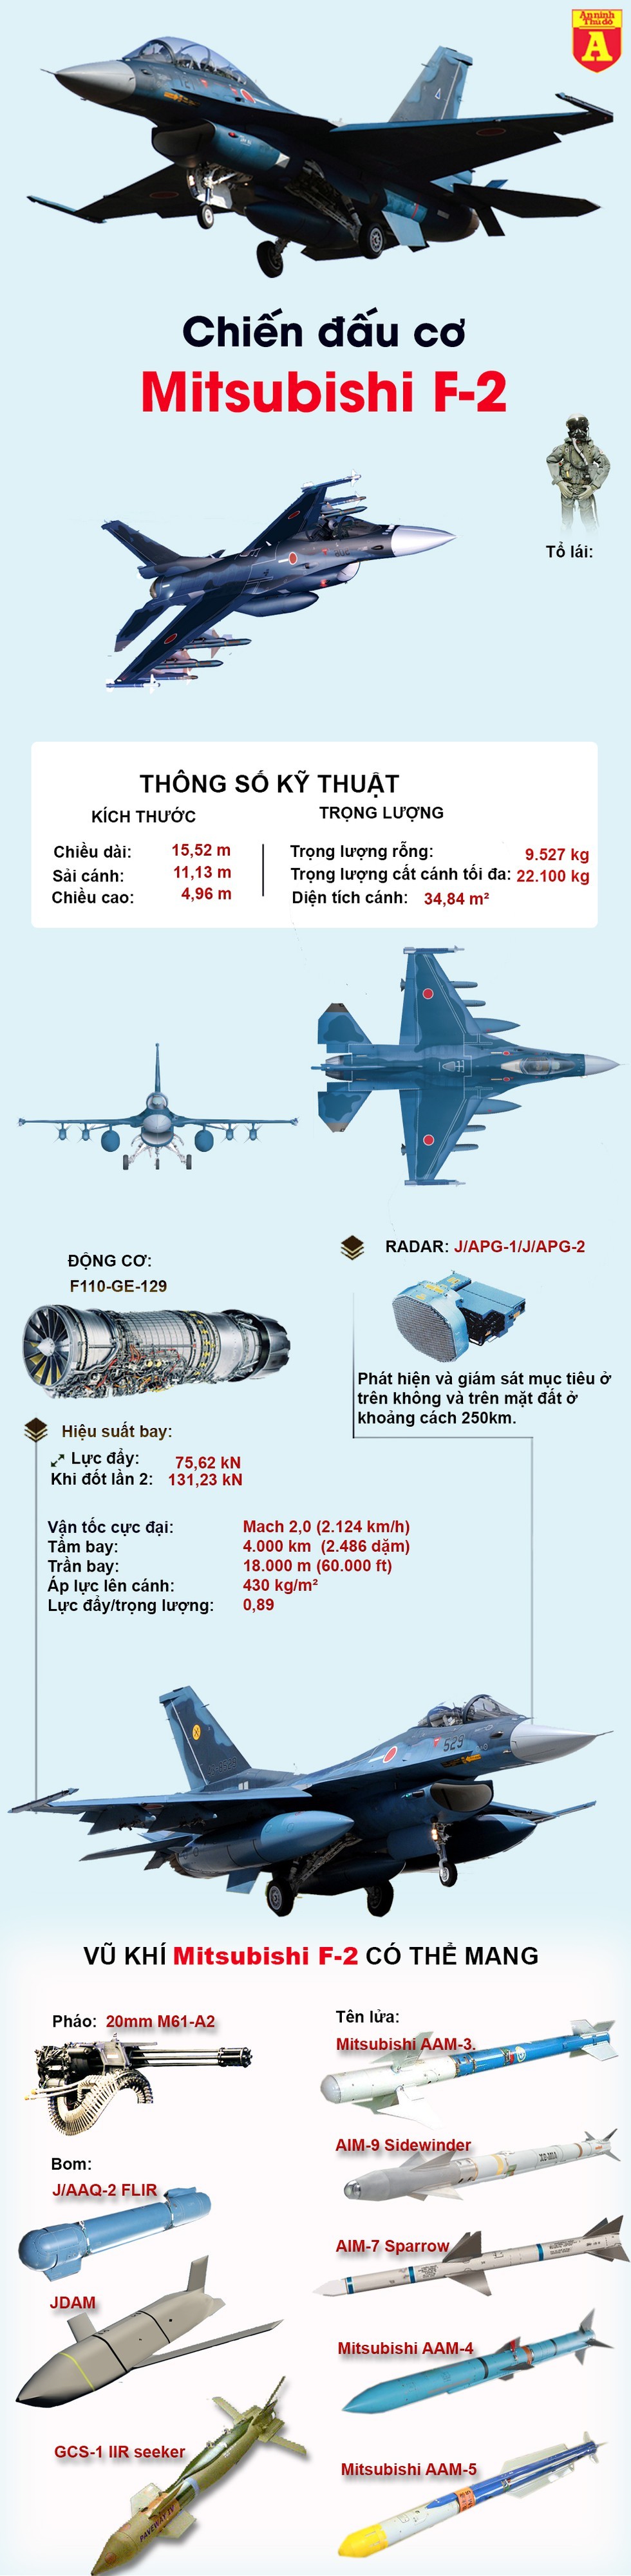 [Info] Mitsubishi F-2, phiên bản mạnh nhất được phát triển từ F-16 khiến Trung Quốc lo sợ ảnh 2